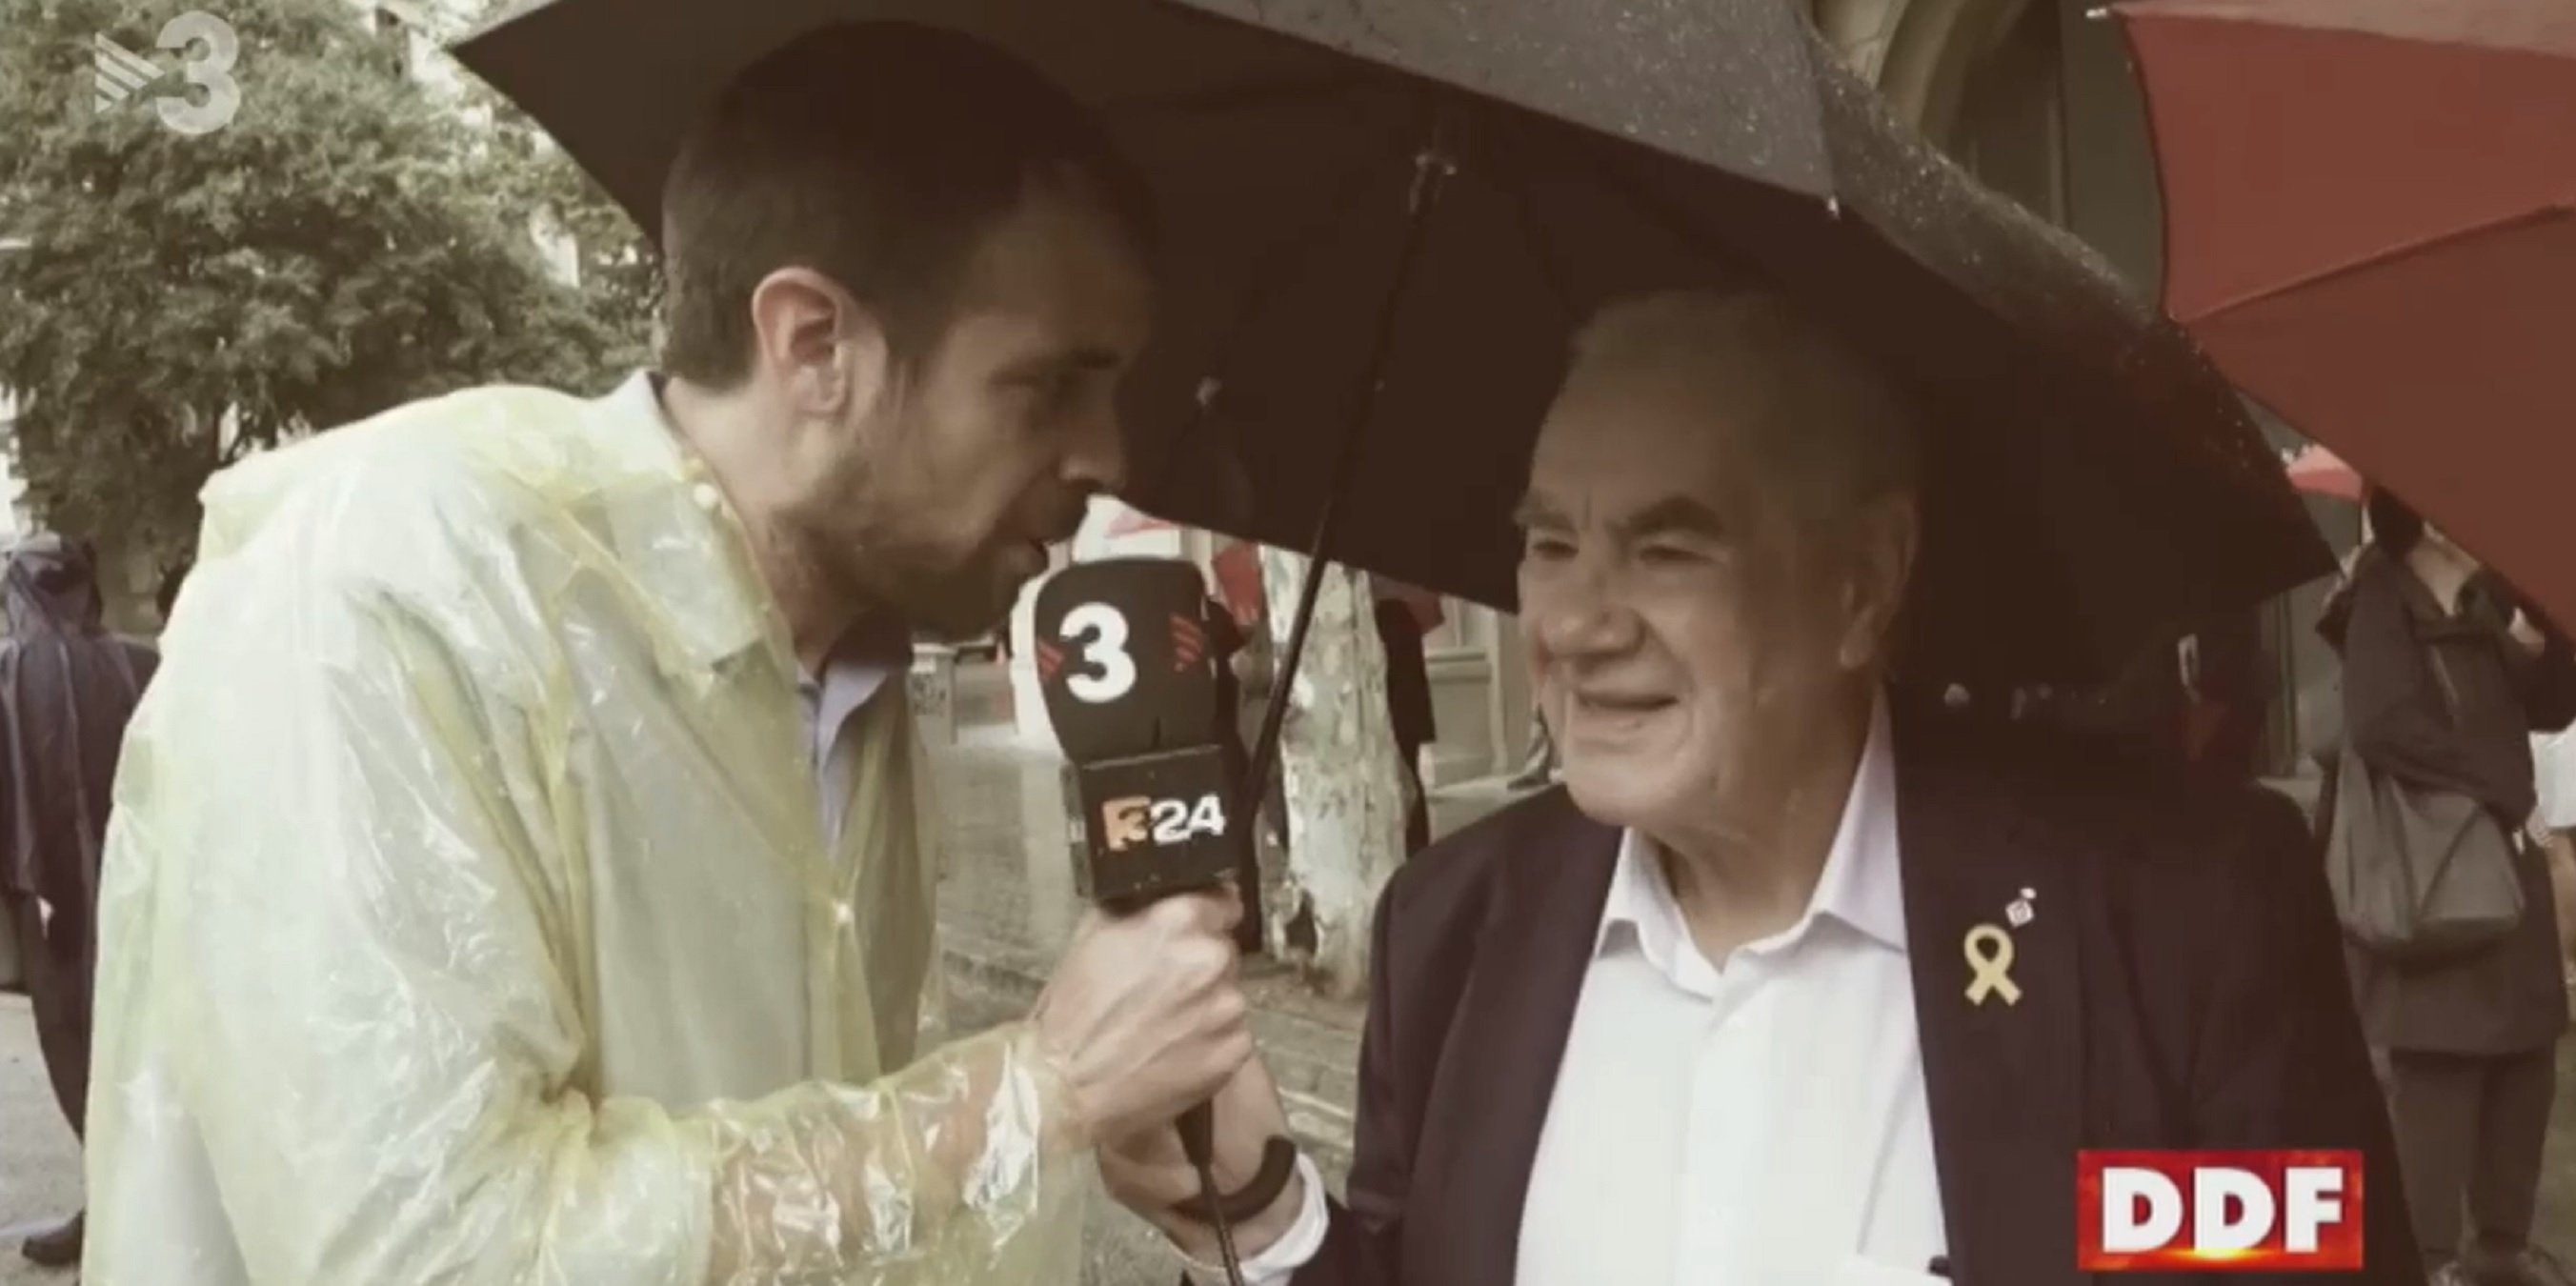 TV3 se mofa de la muerte de indepes: "A Maragall le quedan 7 años de vida"